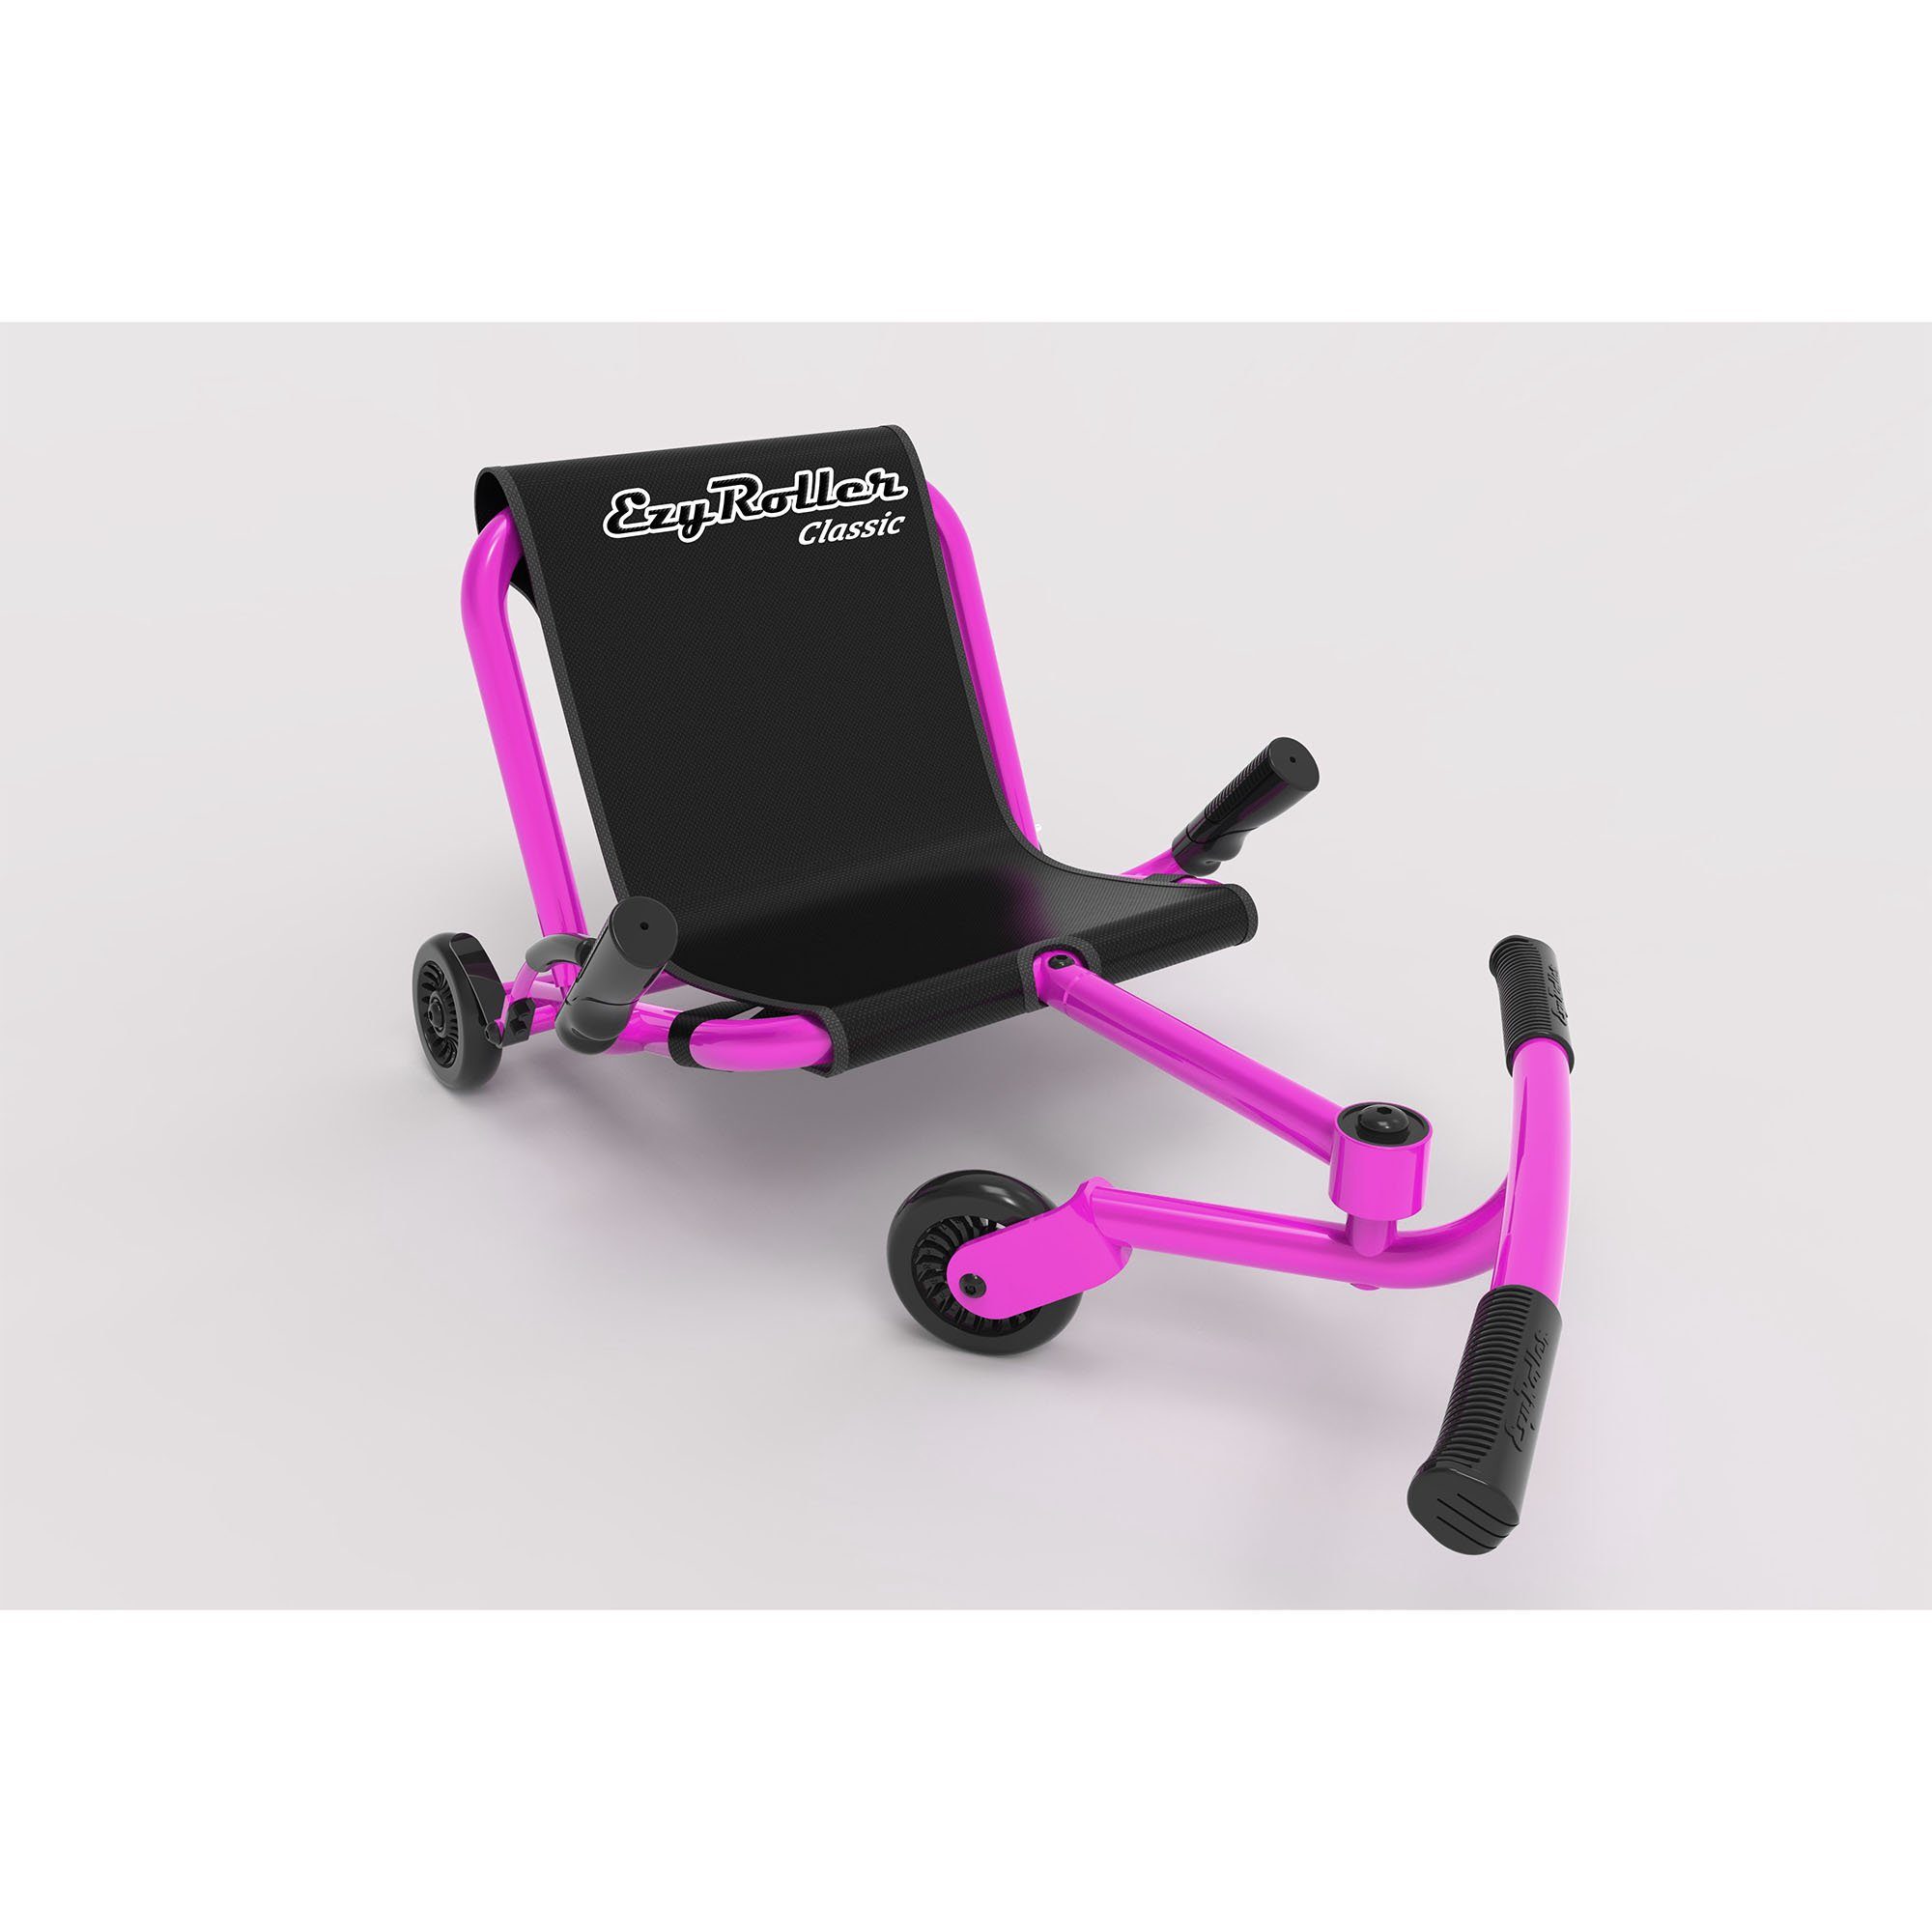 EzyRoller Dreiradscooter Classic, Kinderfahrzeug für Kinder ab 4 bis 14 Jahre Dreirad Trike Funfahrzeug pink